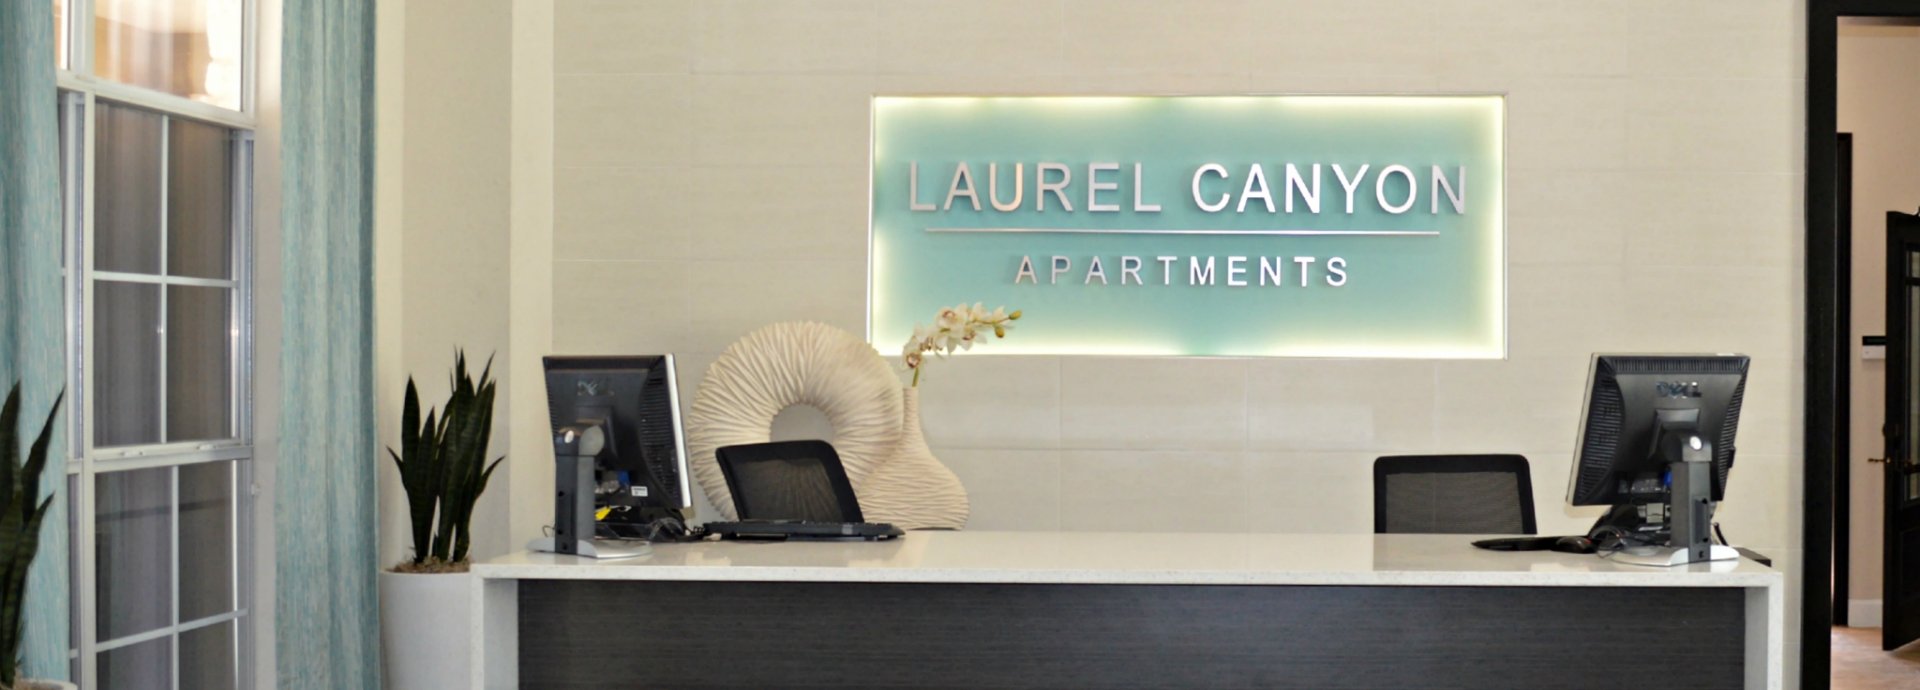 Elegant Apartments Canyon Laurel photographs taken this month